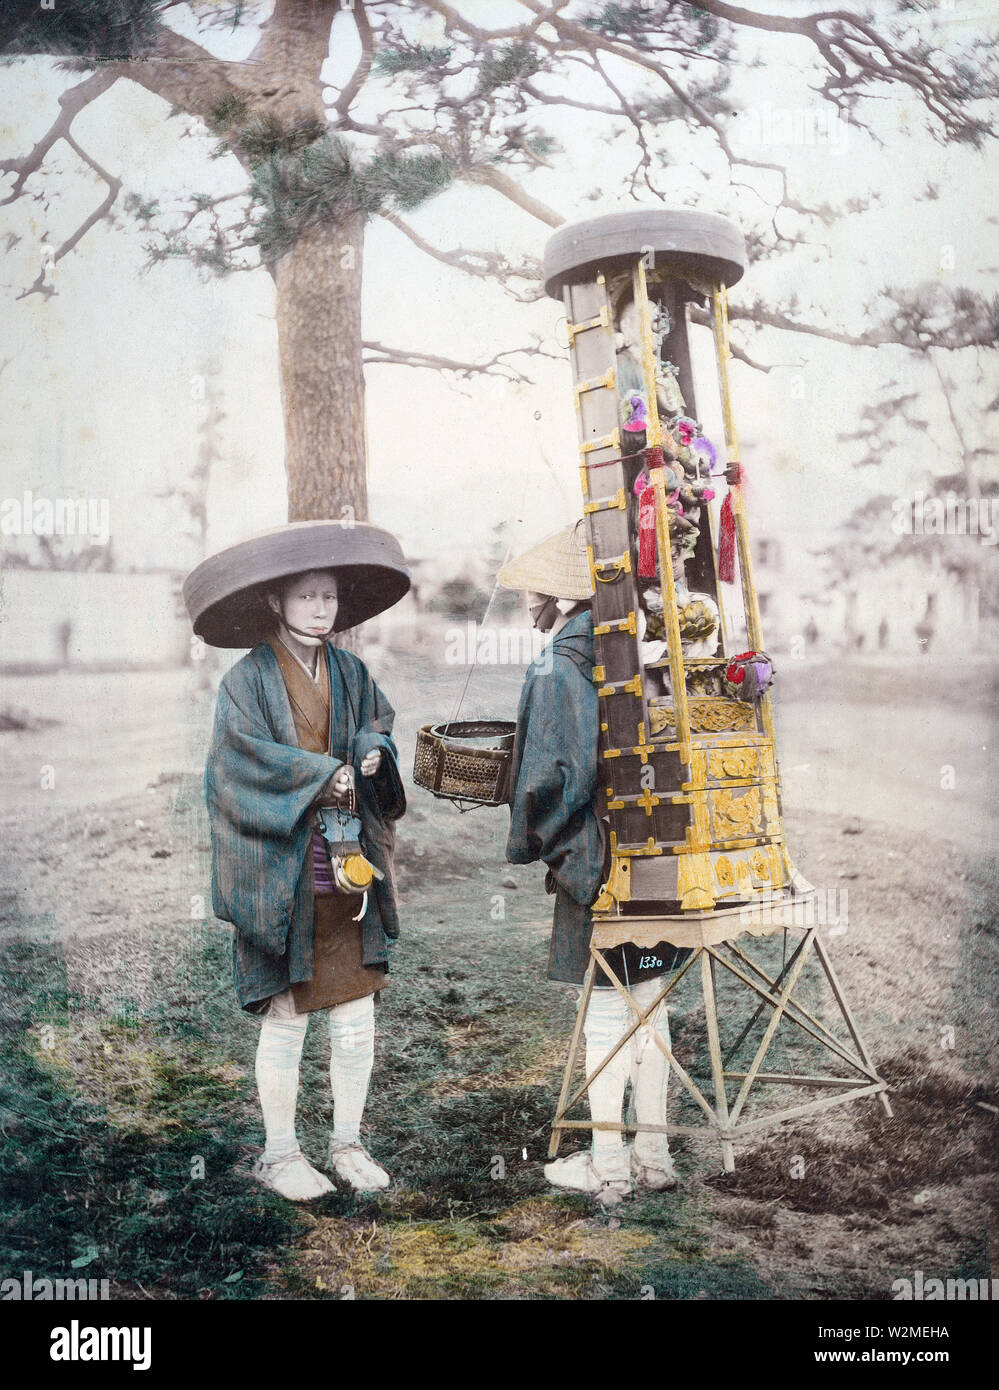 [1880s Japan - japanischer buddhistischer Pilger] - Zwei buddhistische Pilger, einer trägt einen tragbaren buddhistische Heiligtum, Ca. In den 1880ern. Versuchsweise Shuzaburo Usui zugeschrieben, weil er in ein Album voller Fotos, die von Fotografen gefunden wurde. 19 Vintage albumen Foto. Stockfoto